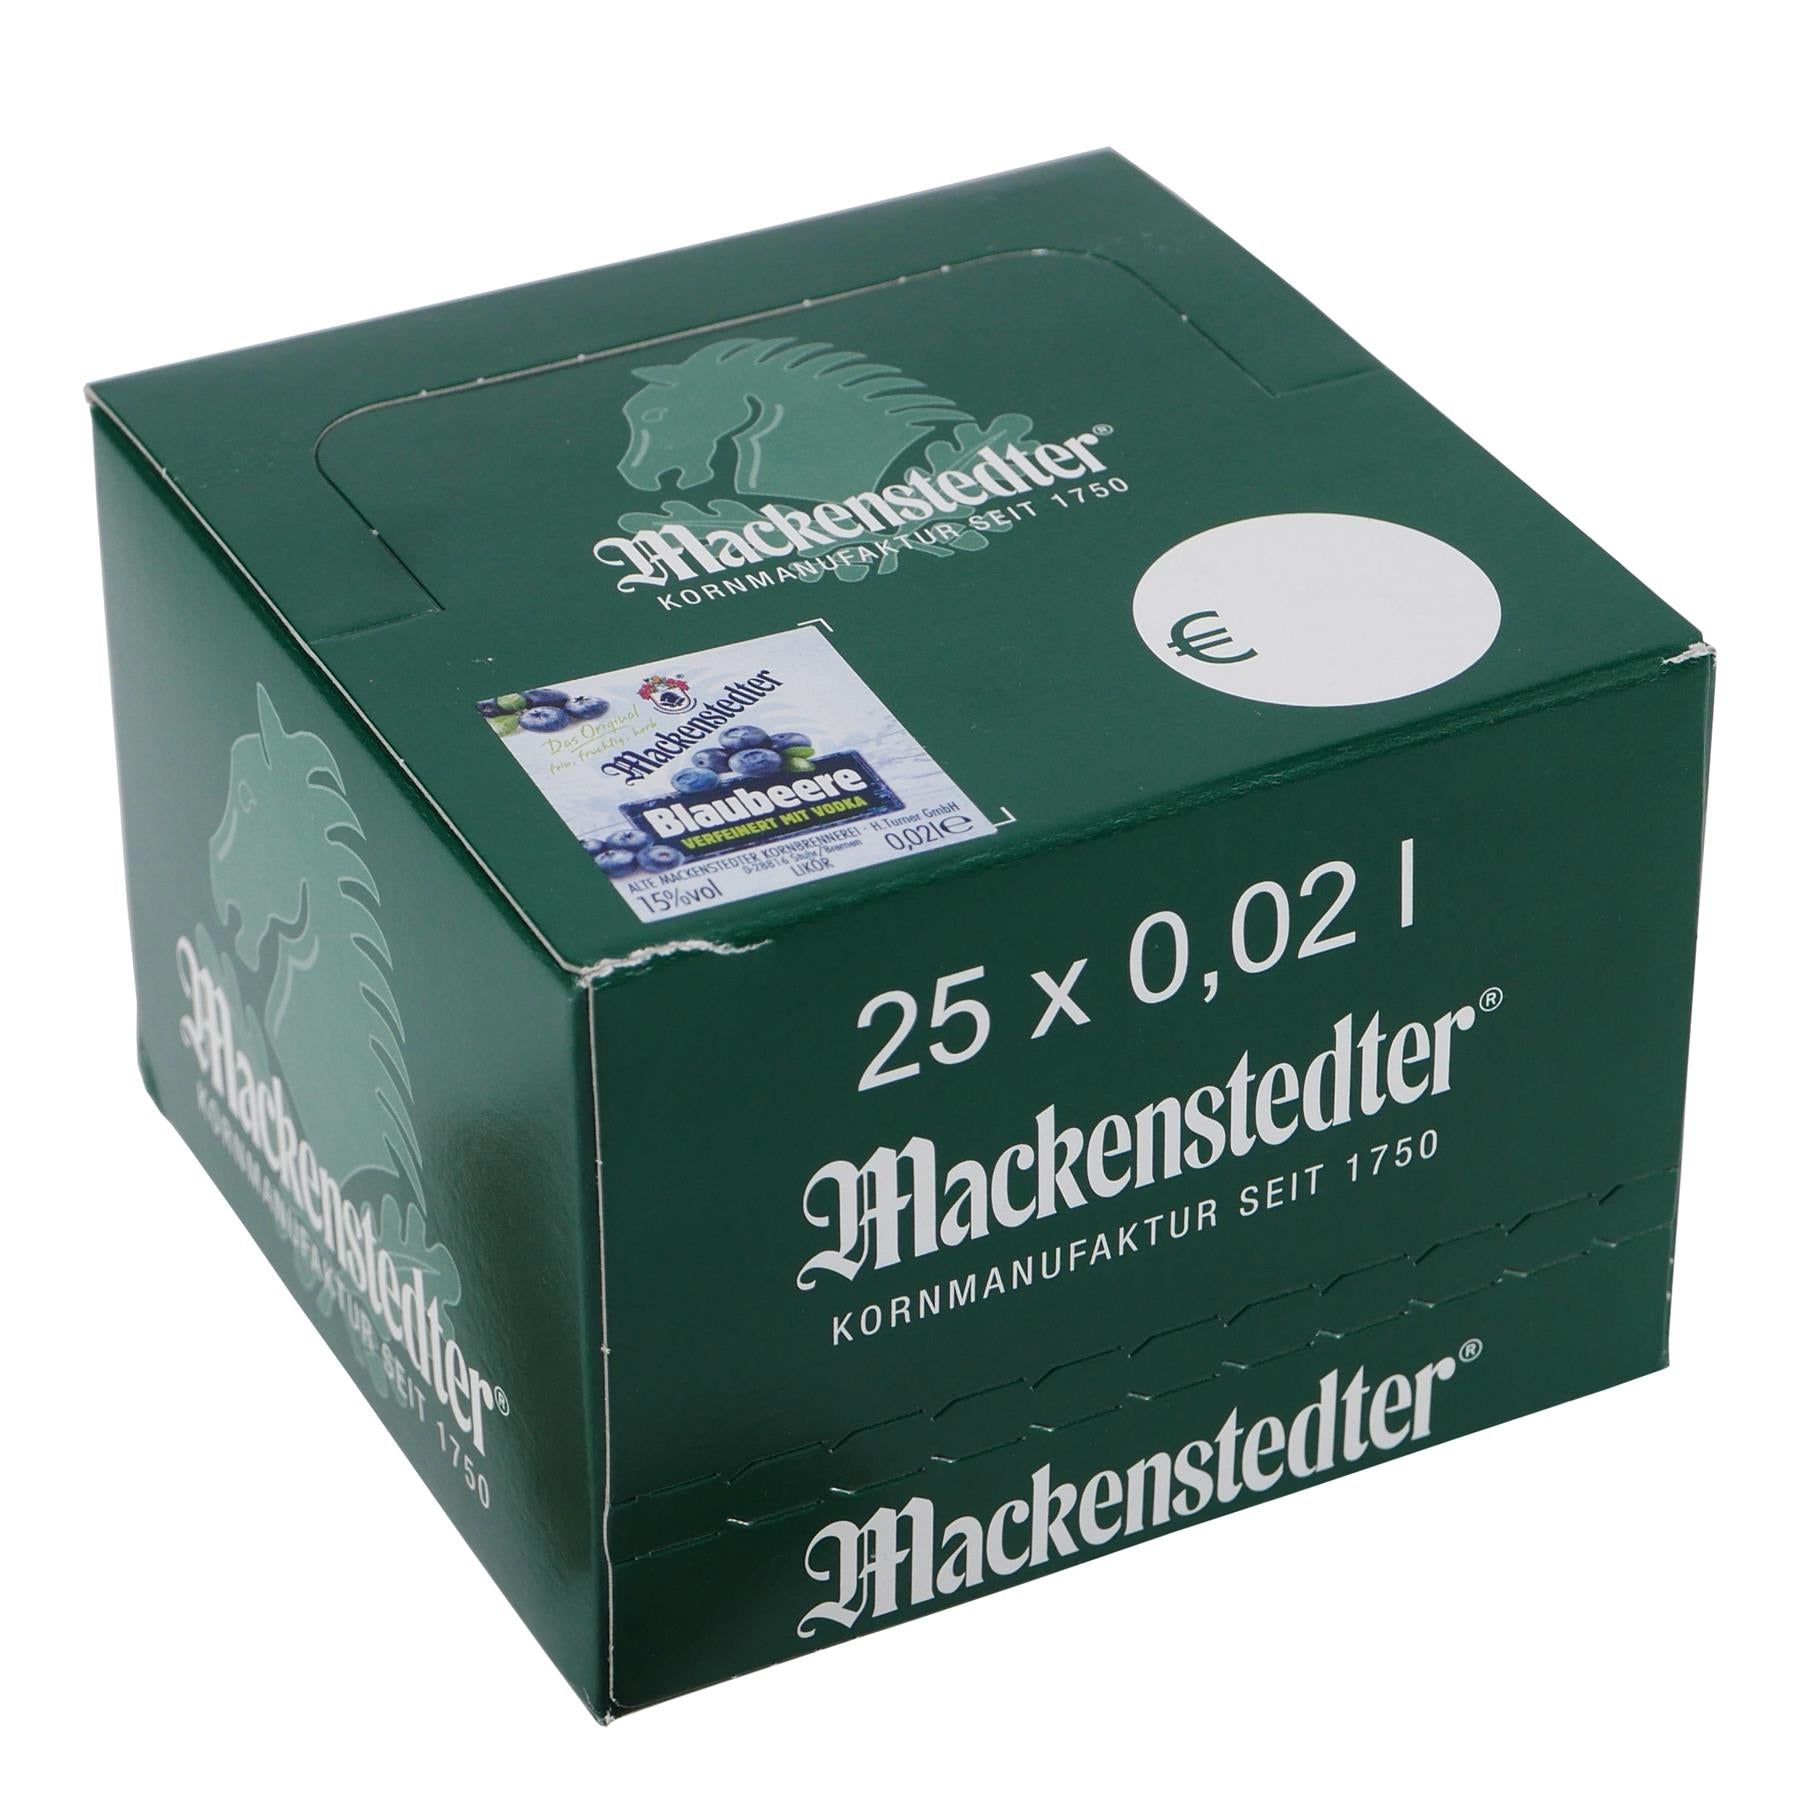 Mackenstedter Blaubeere Likör (25 x 0,02L)